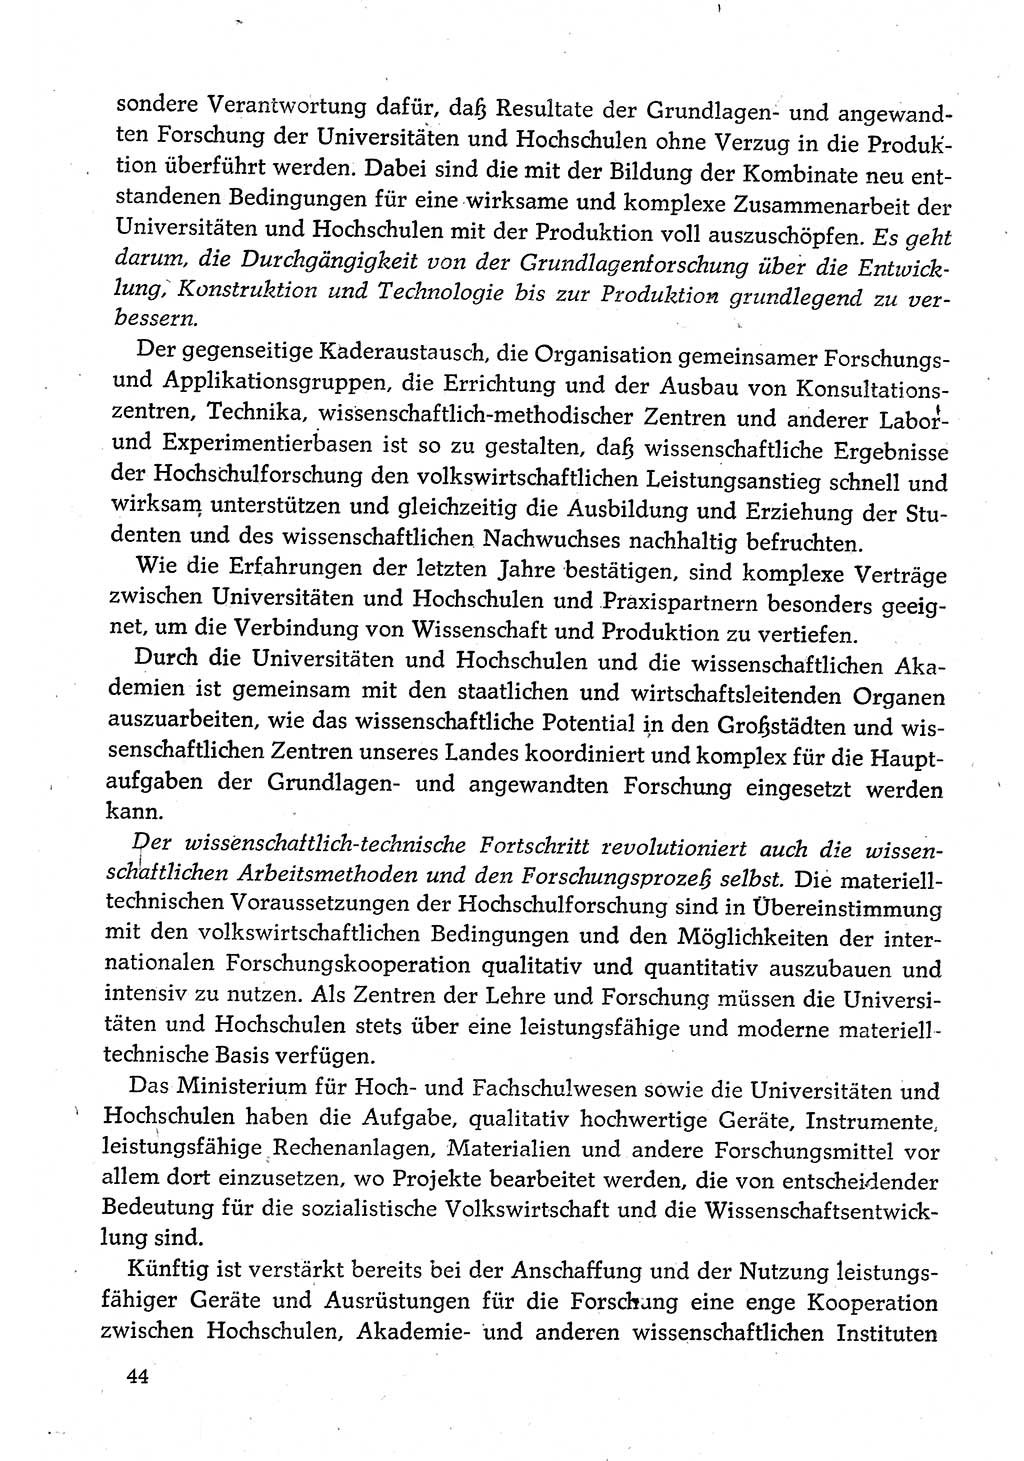 Dokumente der Sozialistischen Einheitspartei Deutschlands (SED) [Deutsche Demokratische Republik (DDR)] 1980-1981, Seite 44 (Dok. SED DDR 1980-1981, S. 44)